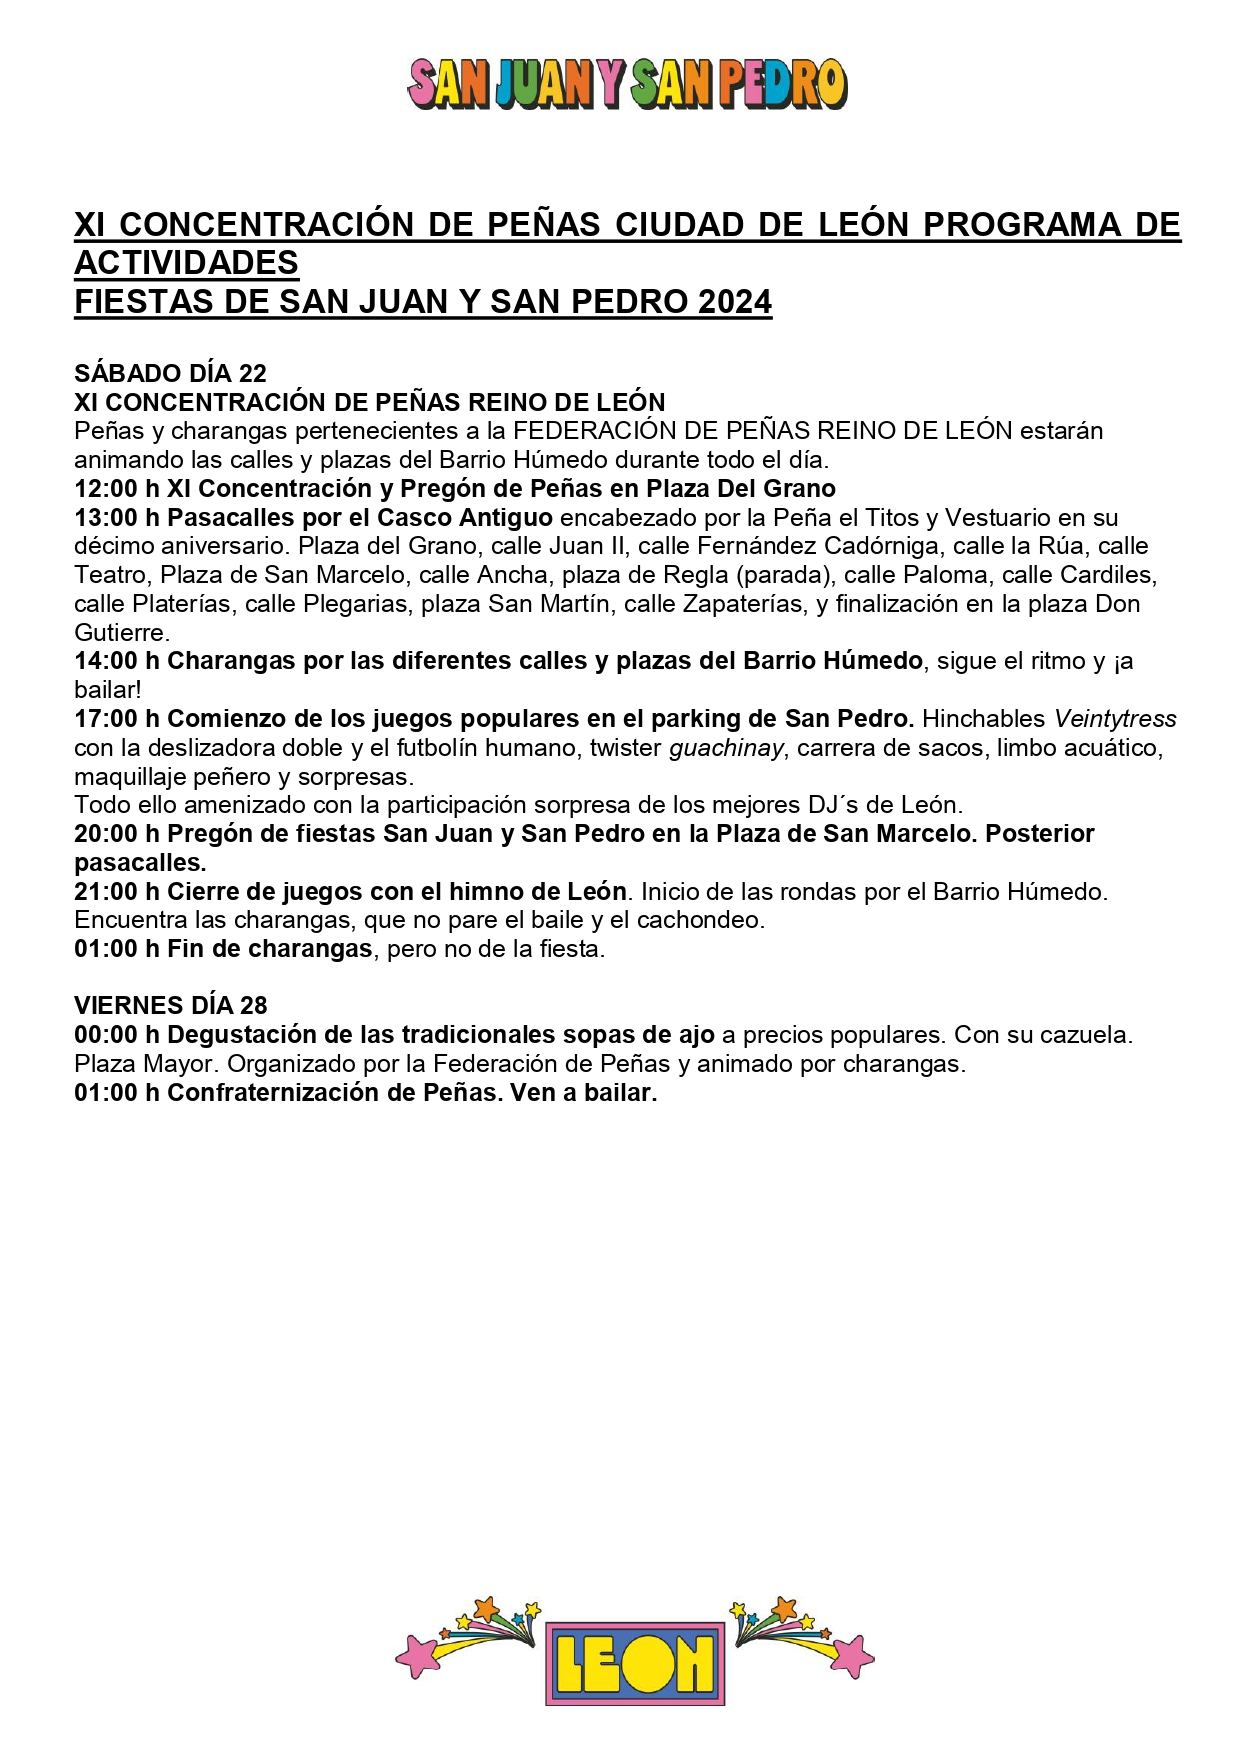 Programa de Fiestas San Juan y San Pedro en León, conciertos, deportes y todas las actividades 30